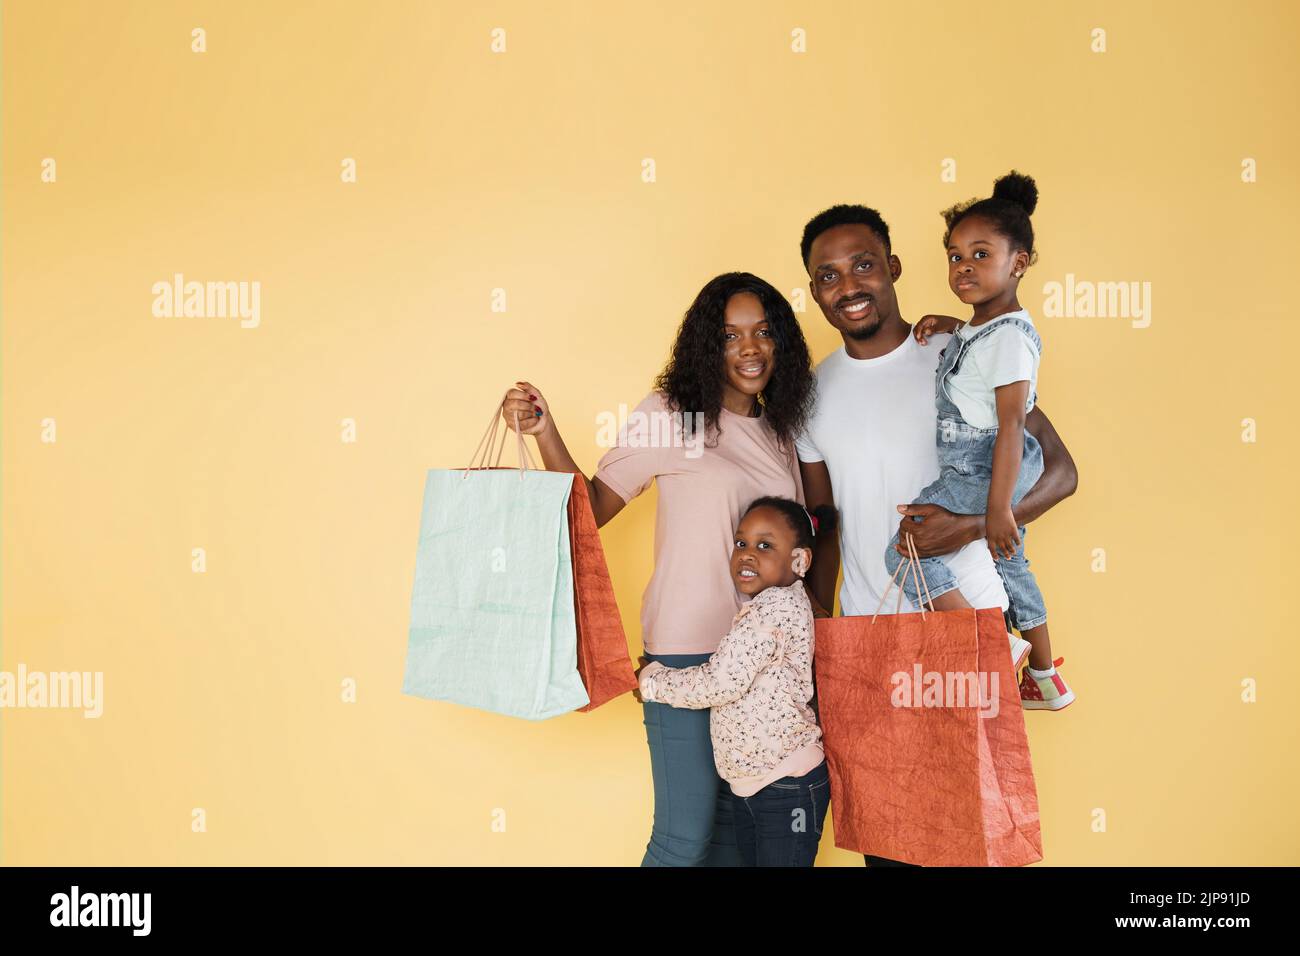 Giovane felice divertimento genitori mamma papà con due bambini figlie ragazze in abiti casual in possesso di borse pacchetto acquisti dopo lo shopping isolato su sfondo giallo. Foto Stock